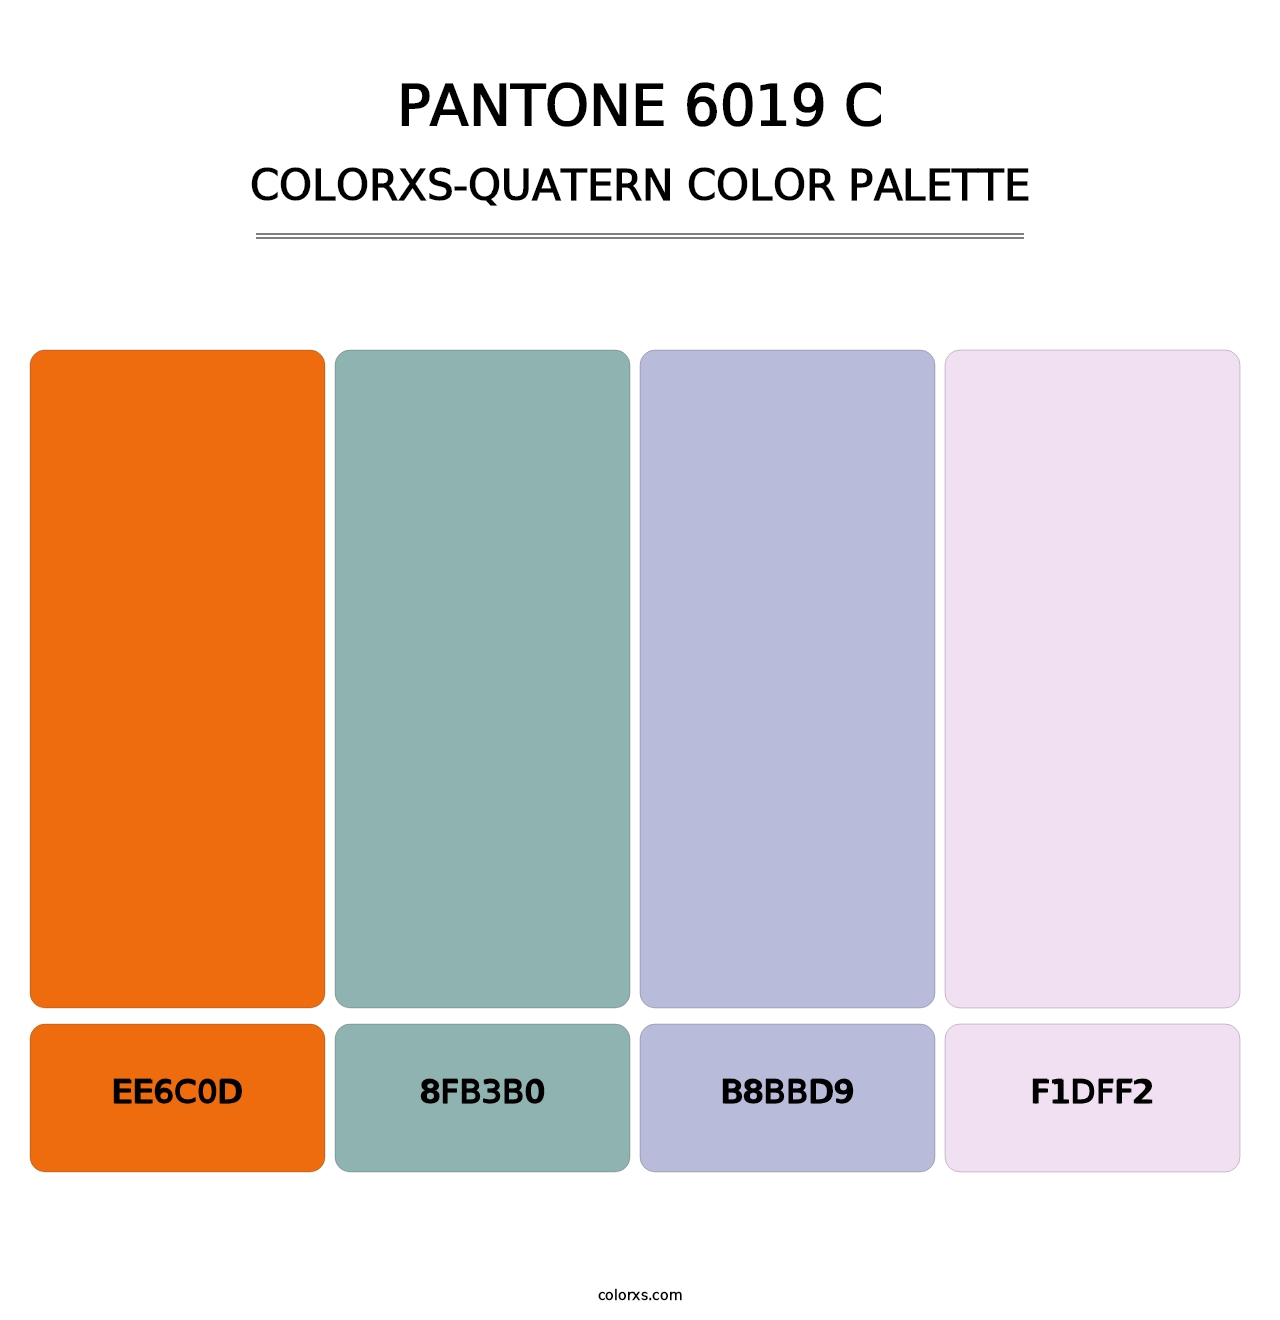 PANTONE 6019 C - Colorxs Quatern Palette